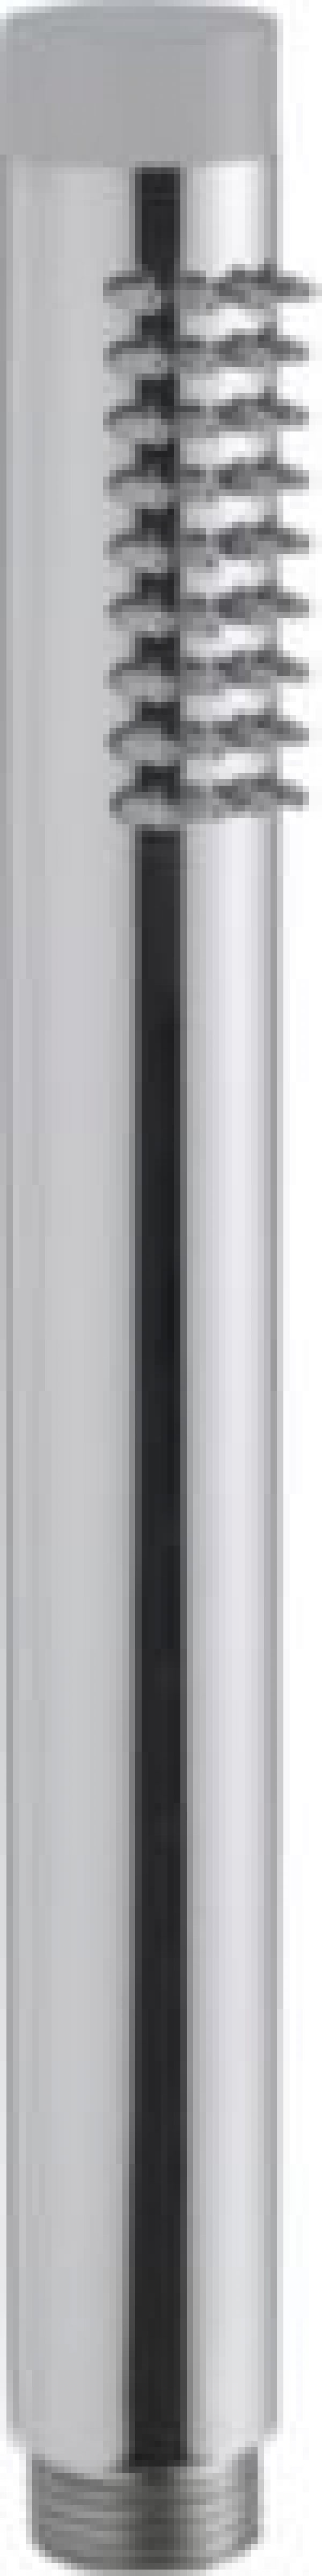 Circle Håndbruser med kontravent, 6L/min, cylinder, med gummidupper, poleret rustfri stål